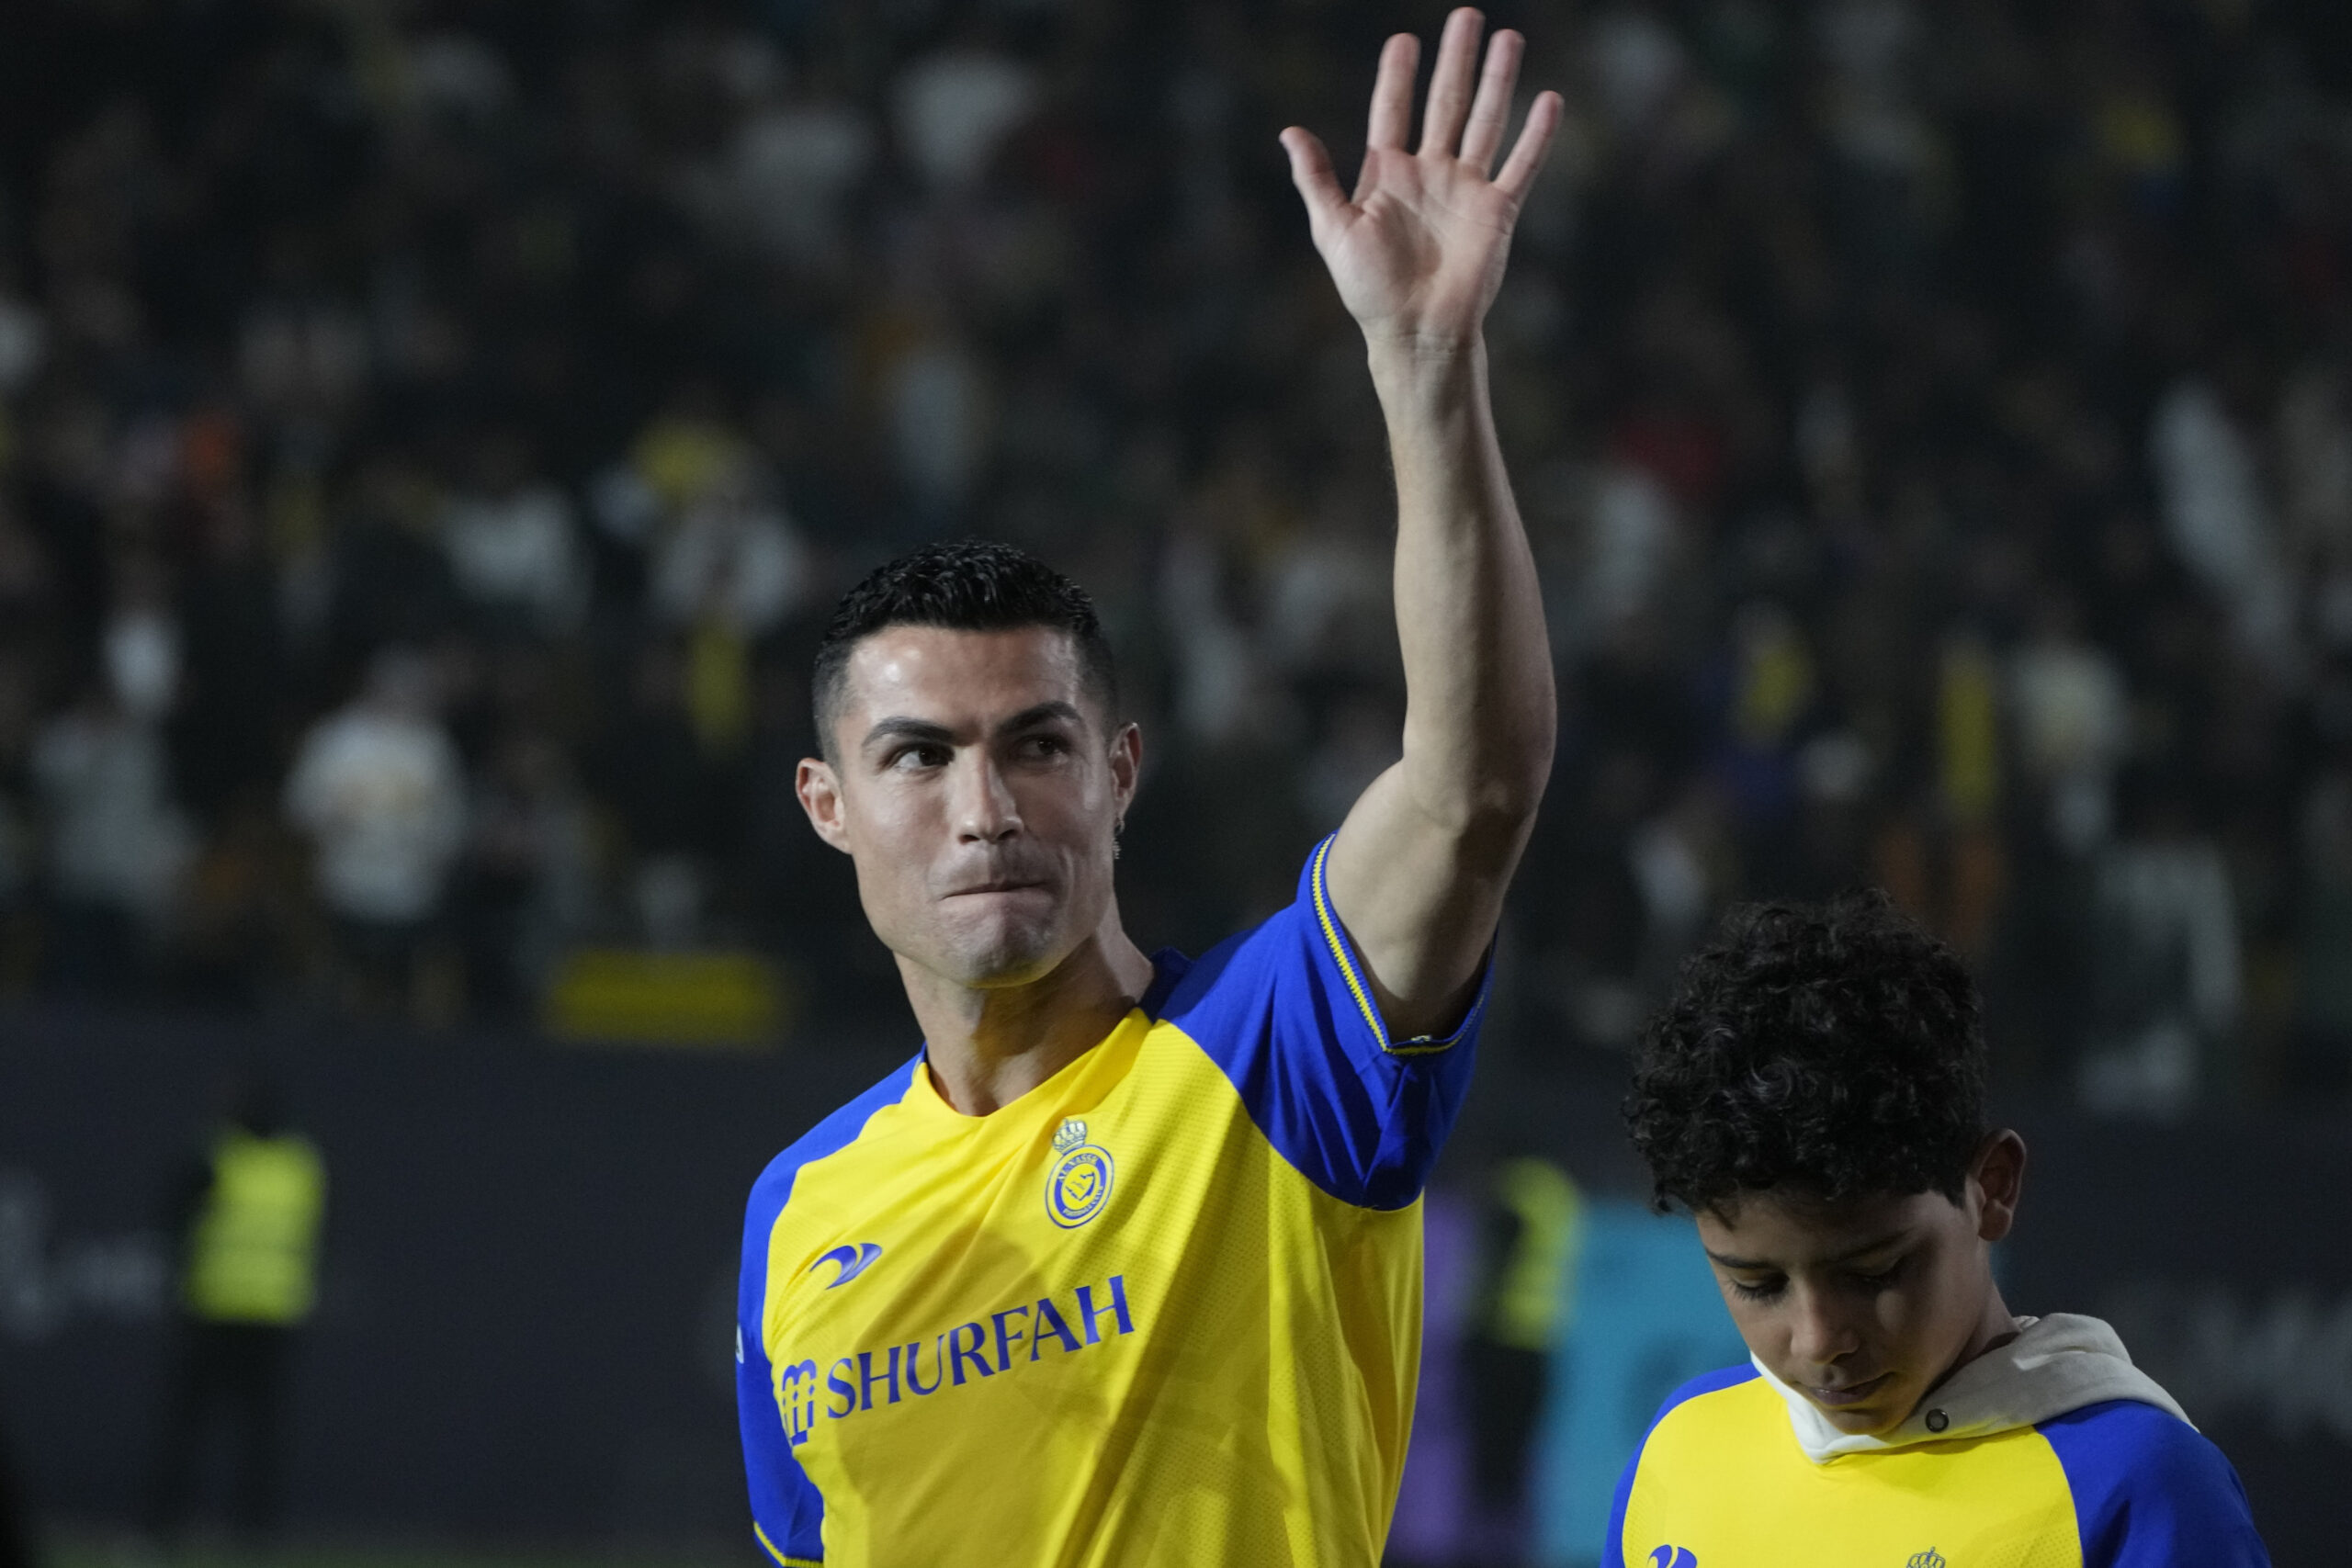 Cristiano Ronaldo winkt im Trikot von al-Nassr